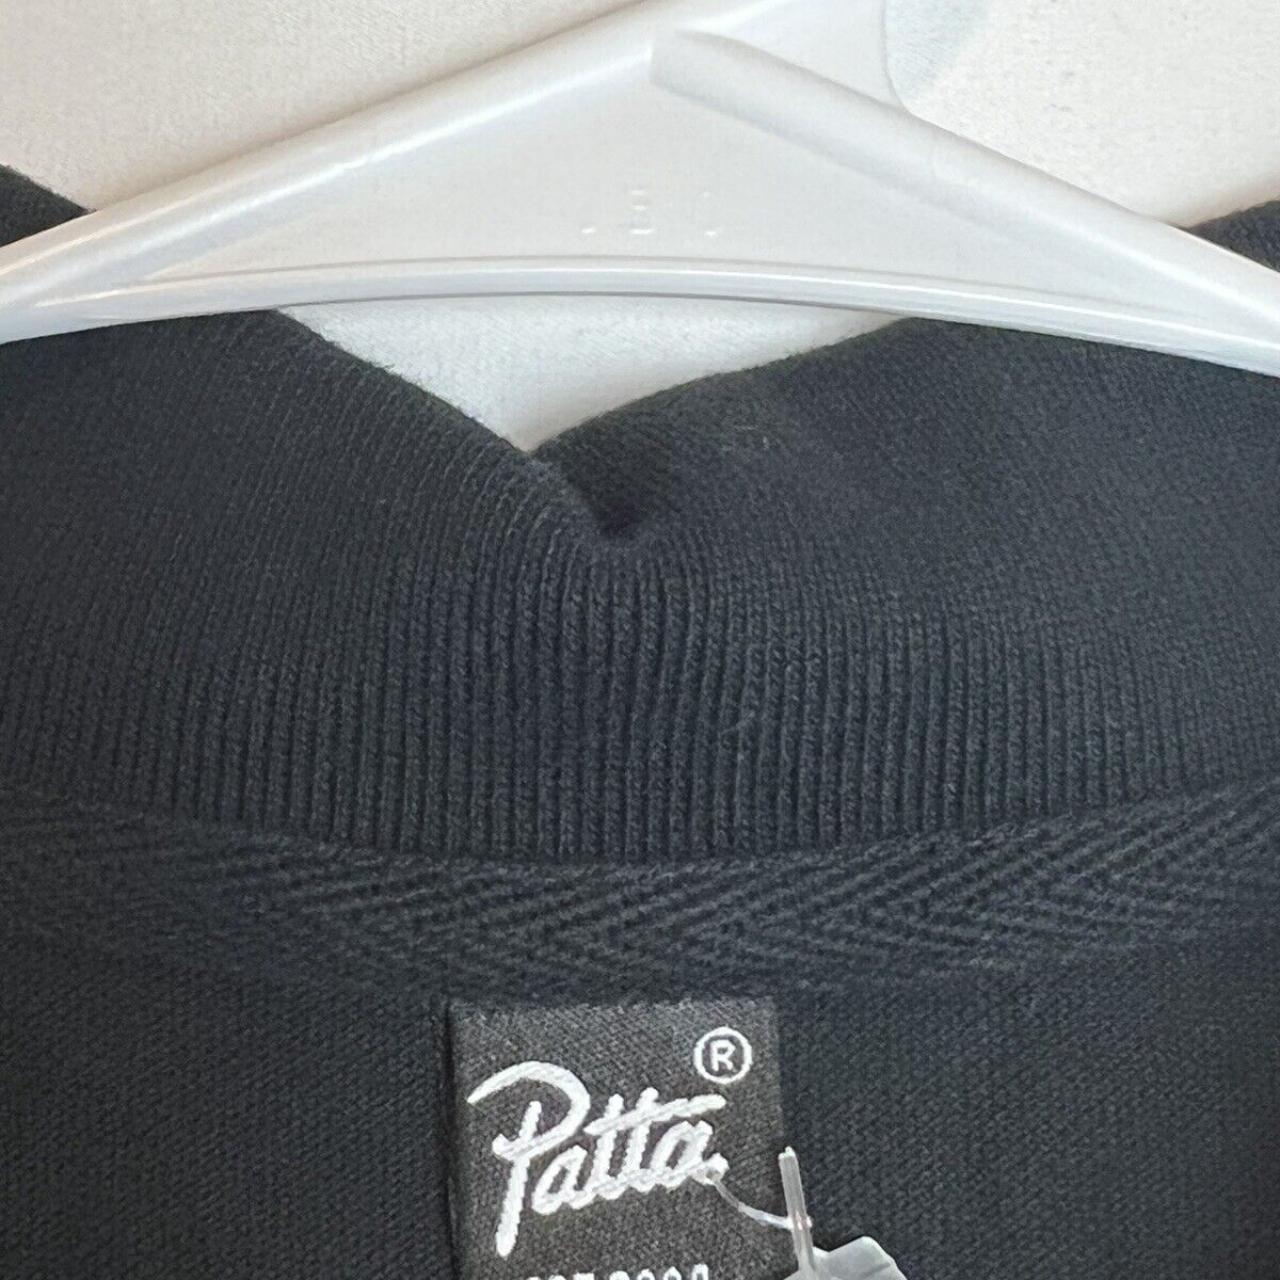 Product Image 3 - PATTA Basic Short sleeve SS